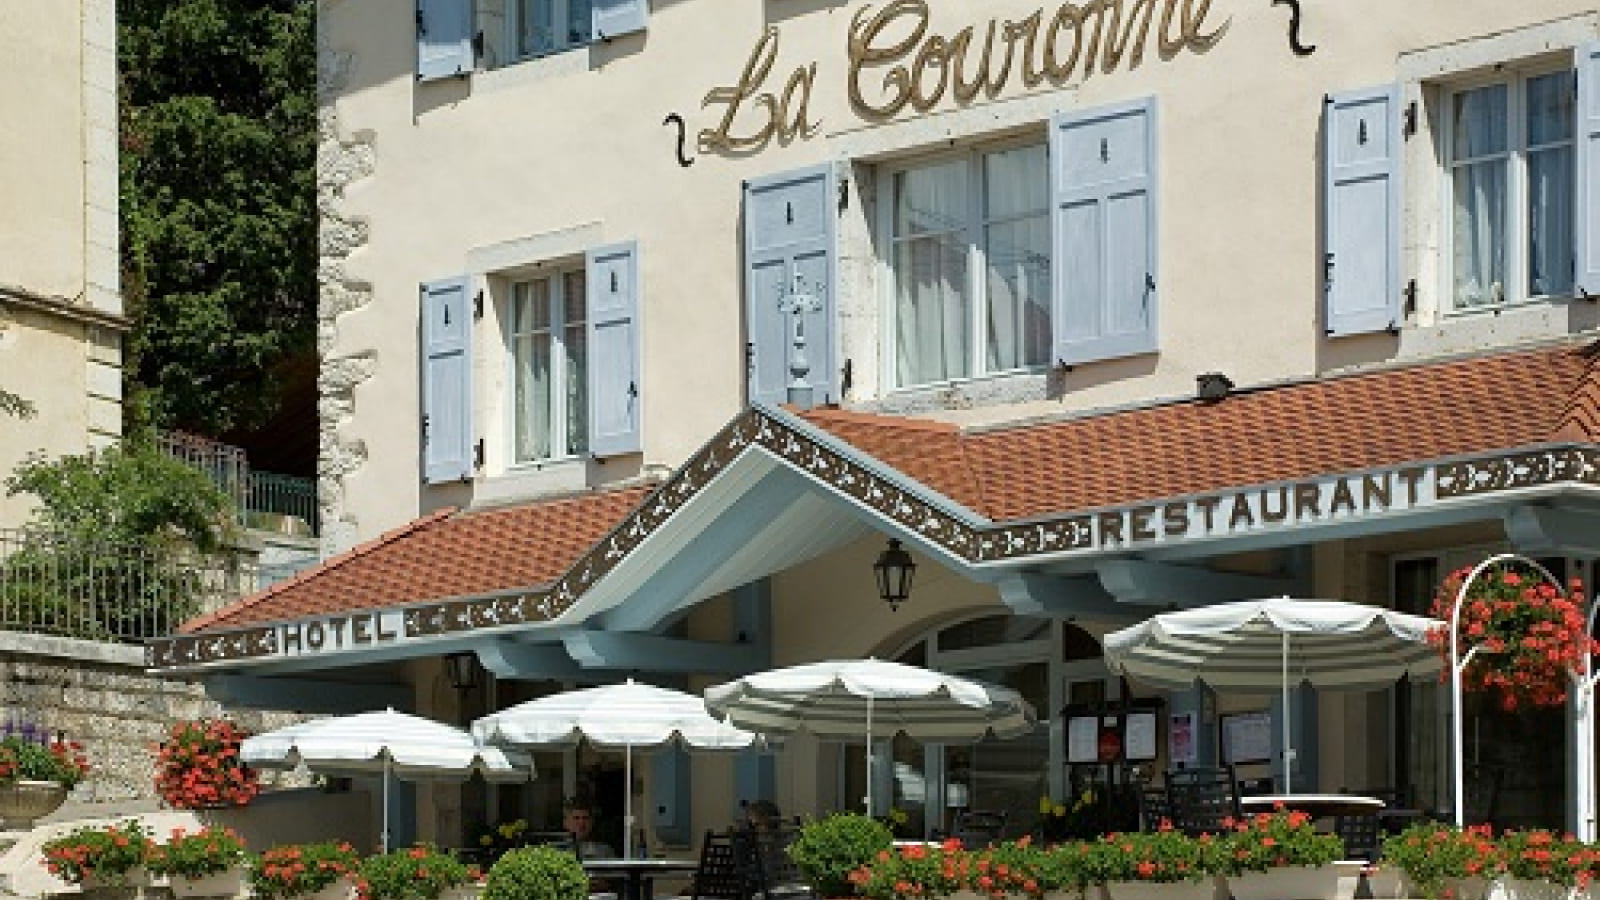 Restaurant la Couronne